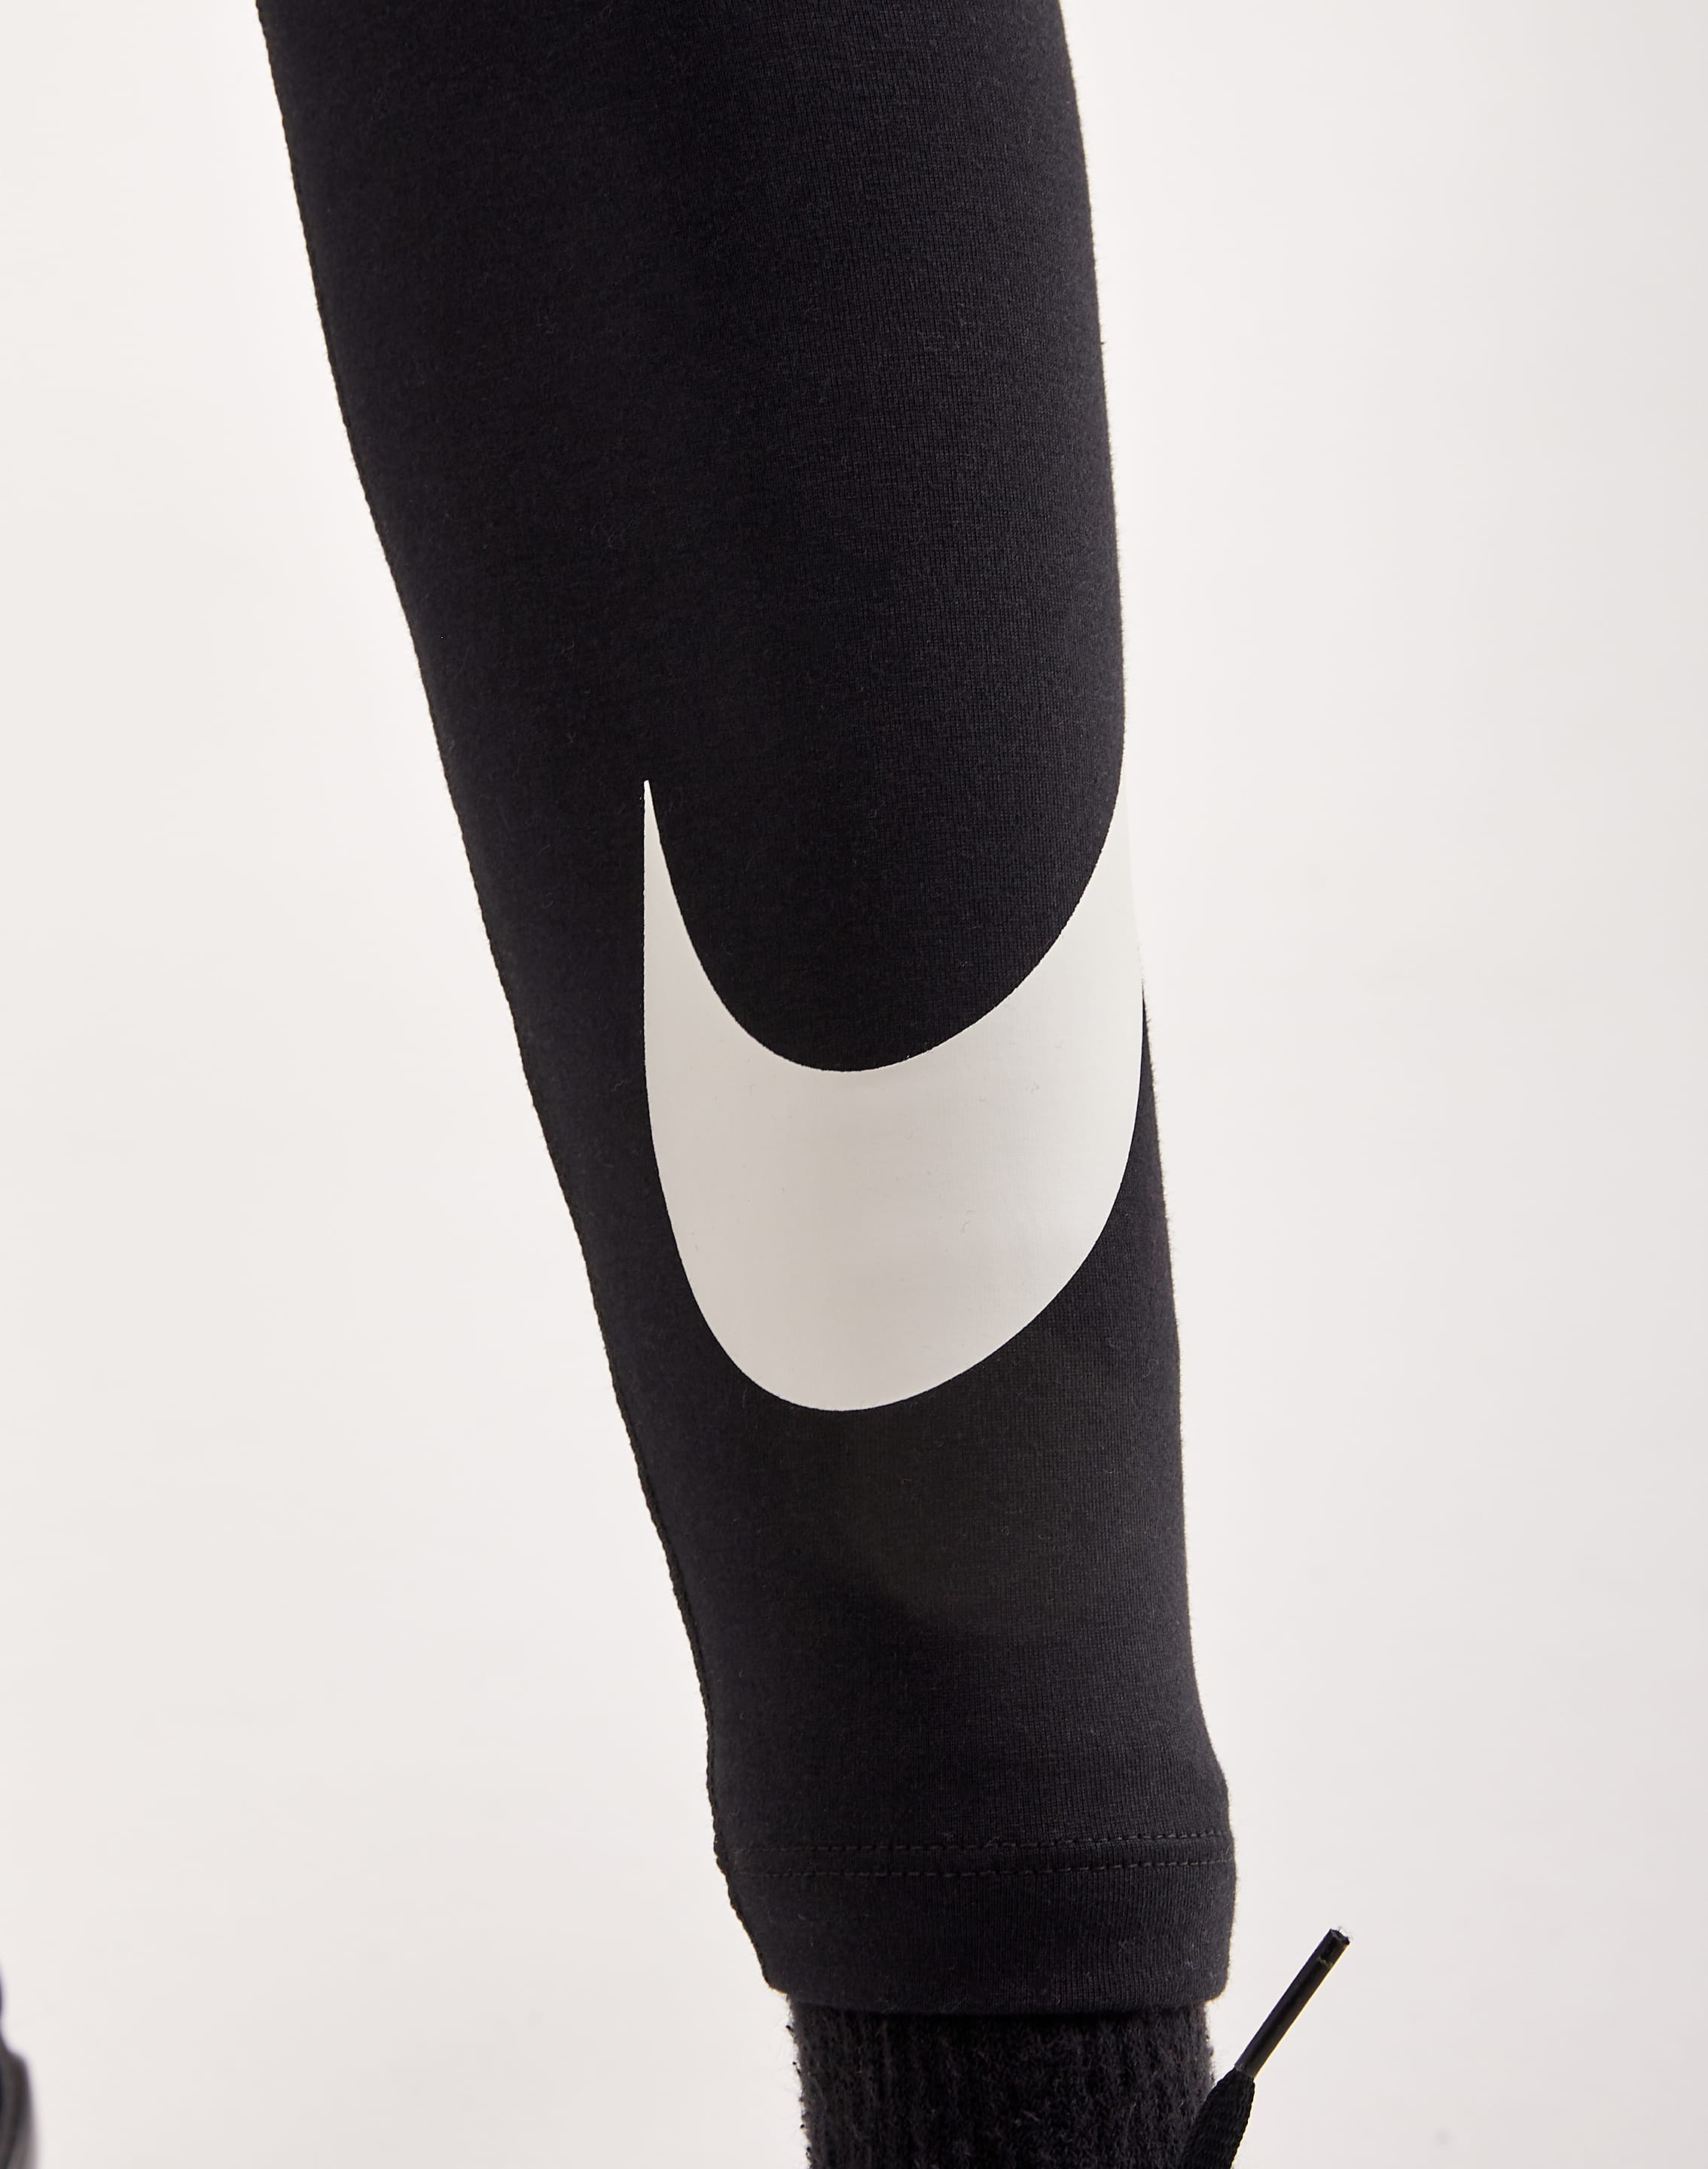 Nike Femme Leggings – DTLR